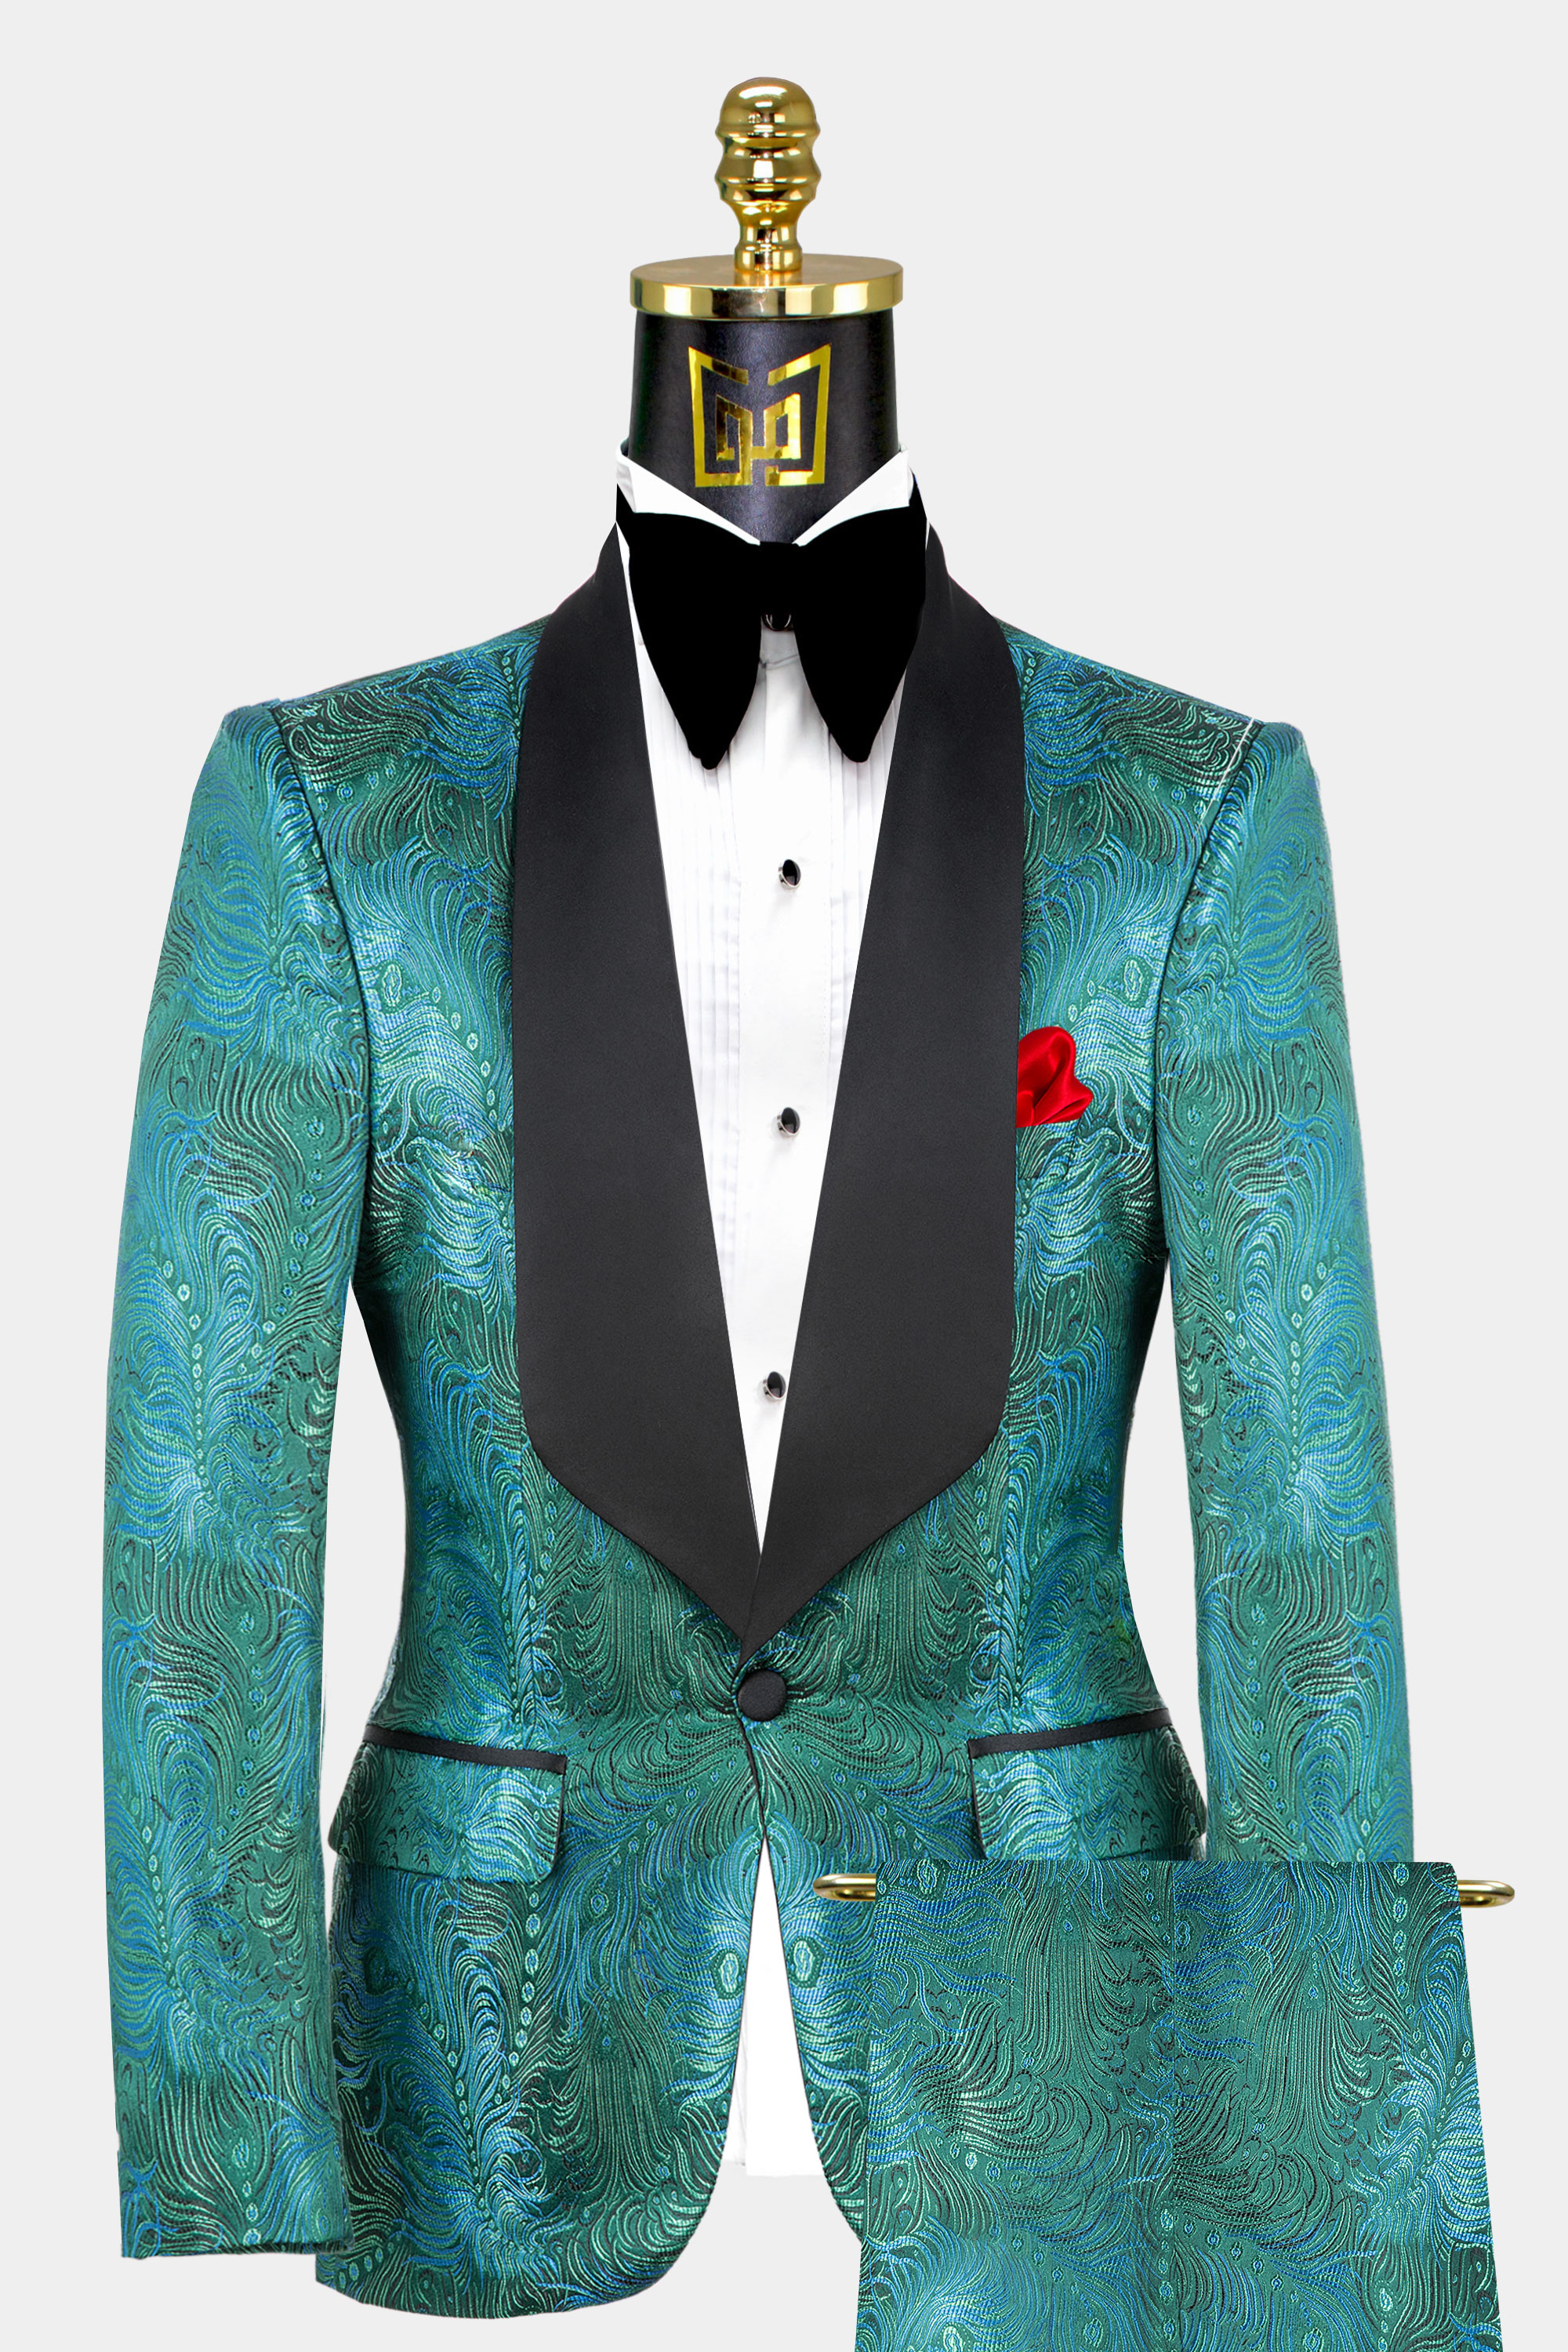 Blue-Green-Tuxedo-Groom-Wedding-Prom-Suit-For-Men-from-Gentlemansguru.com